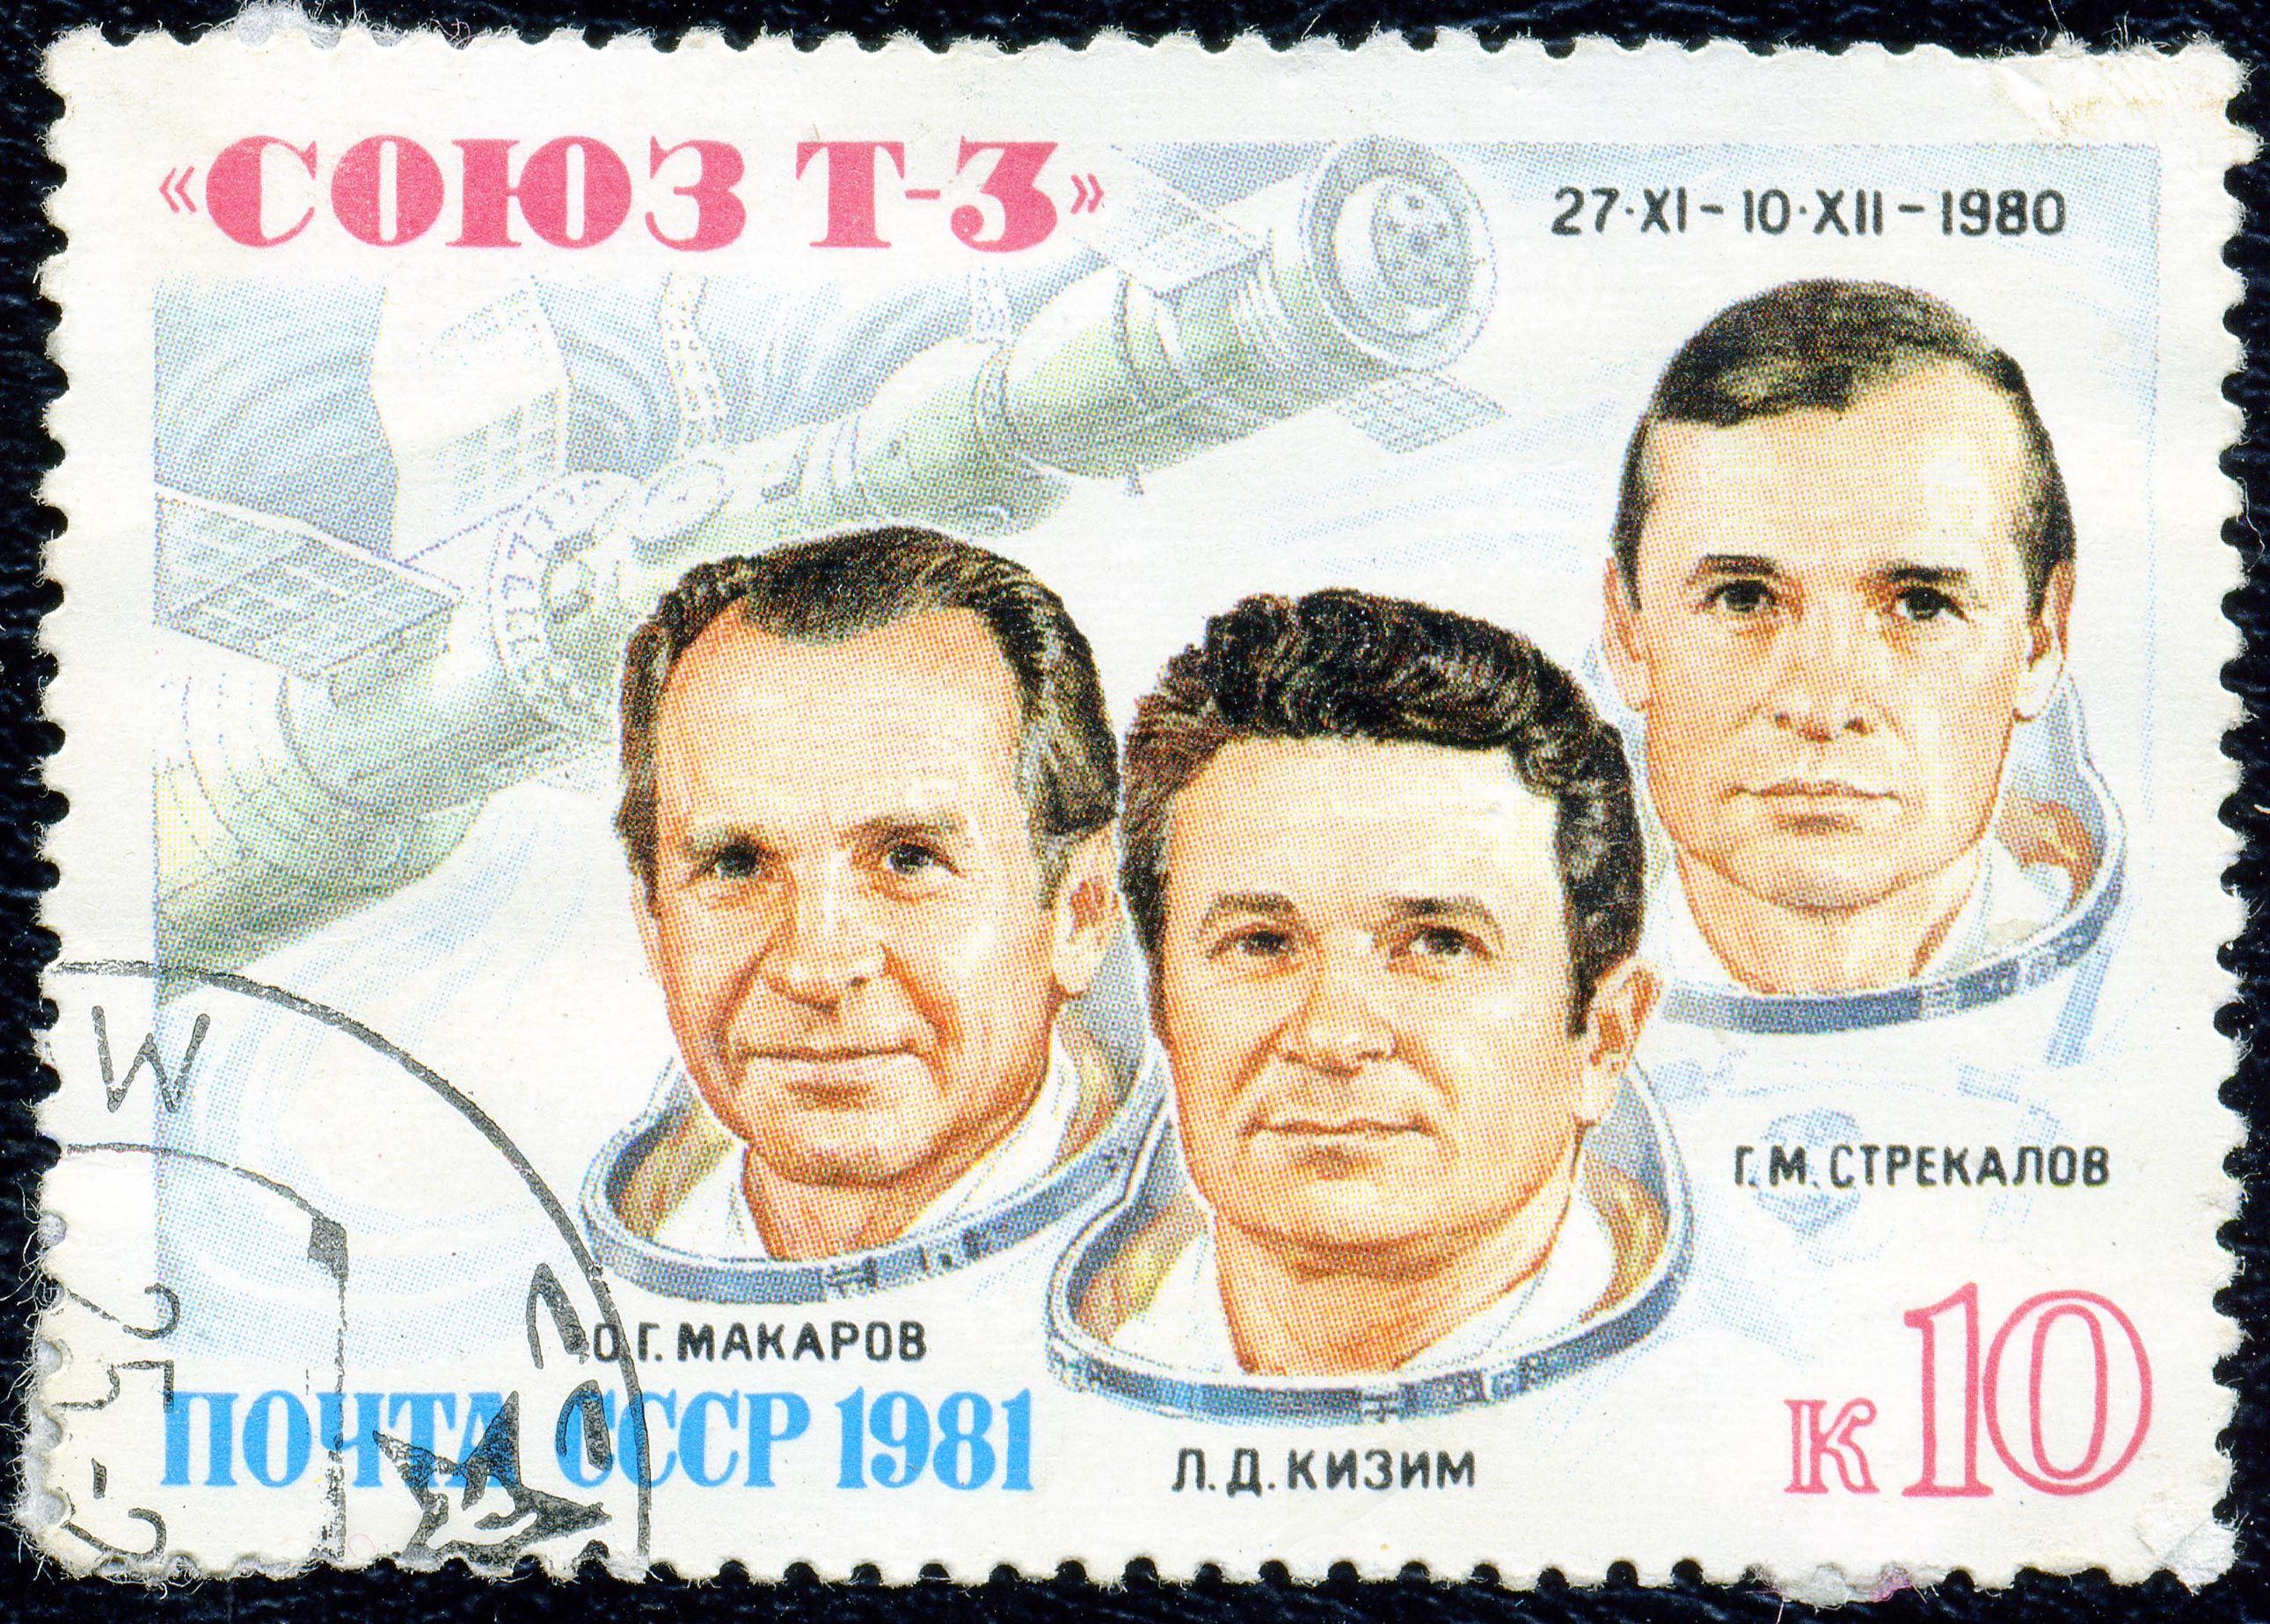 1981. Союз Т-3, Макаров, Кизим, Стрекалов